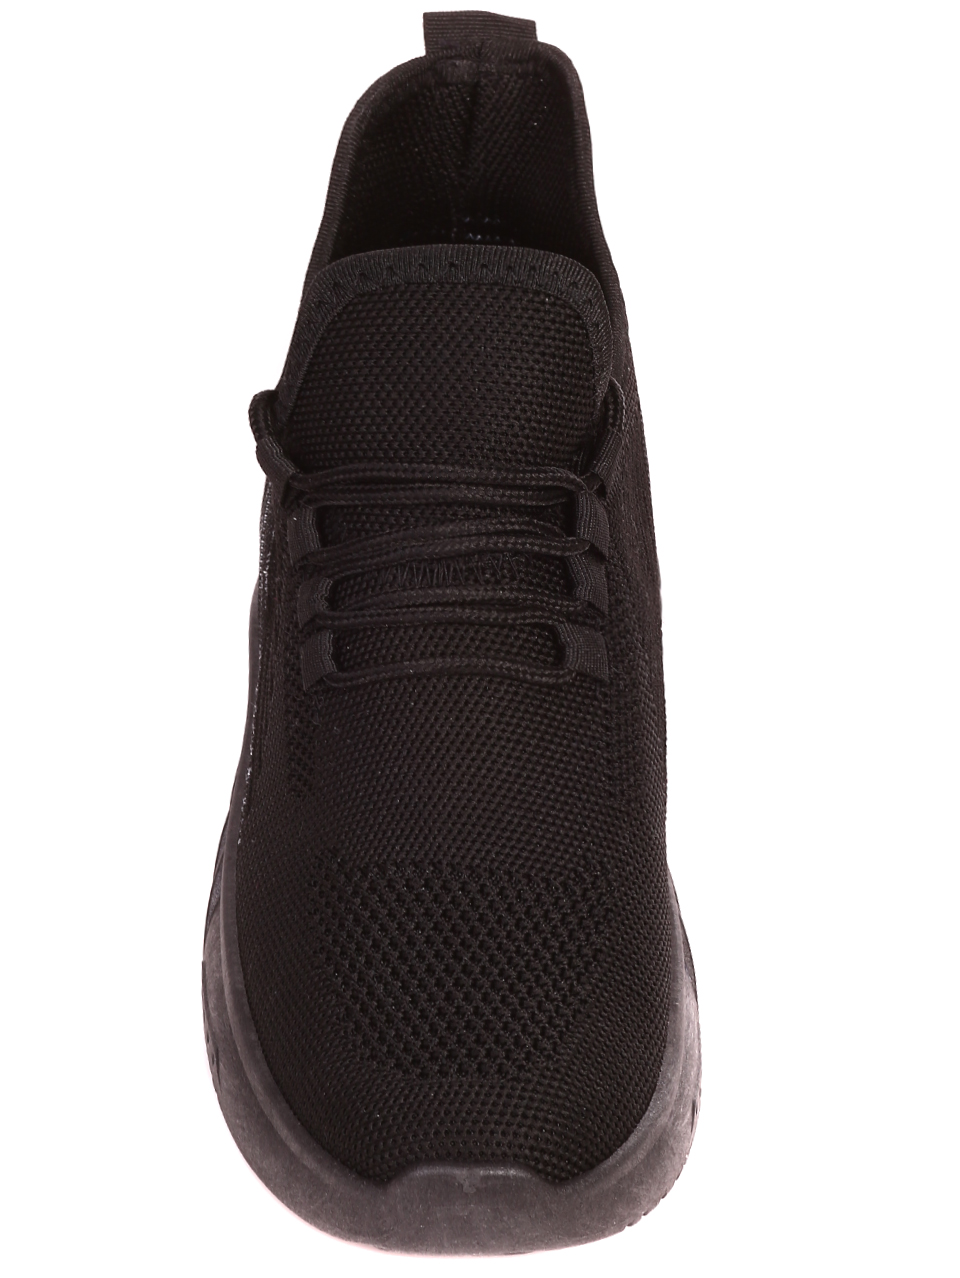 Ежедневни мъжки комфортни обувки в черно 7U-23237 black